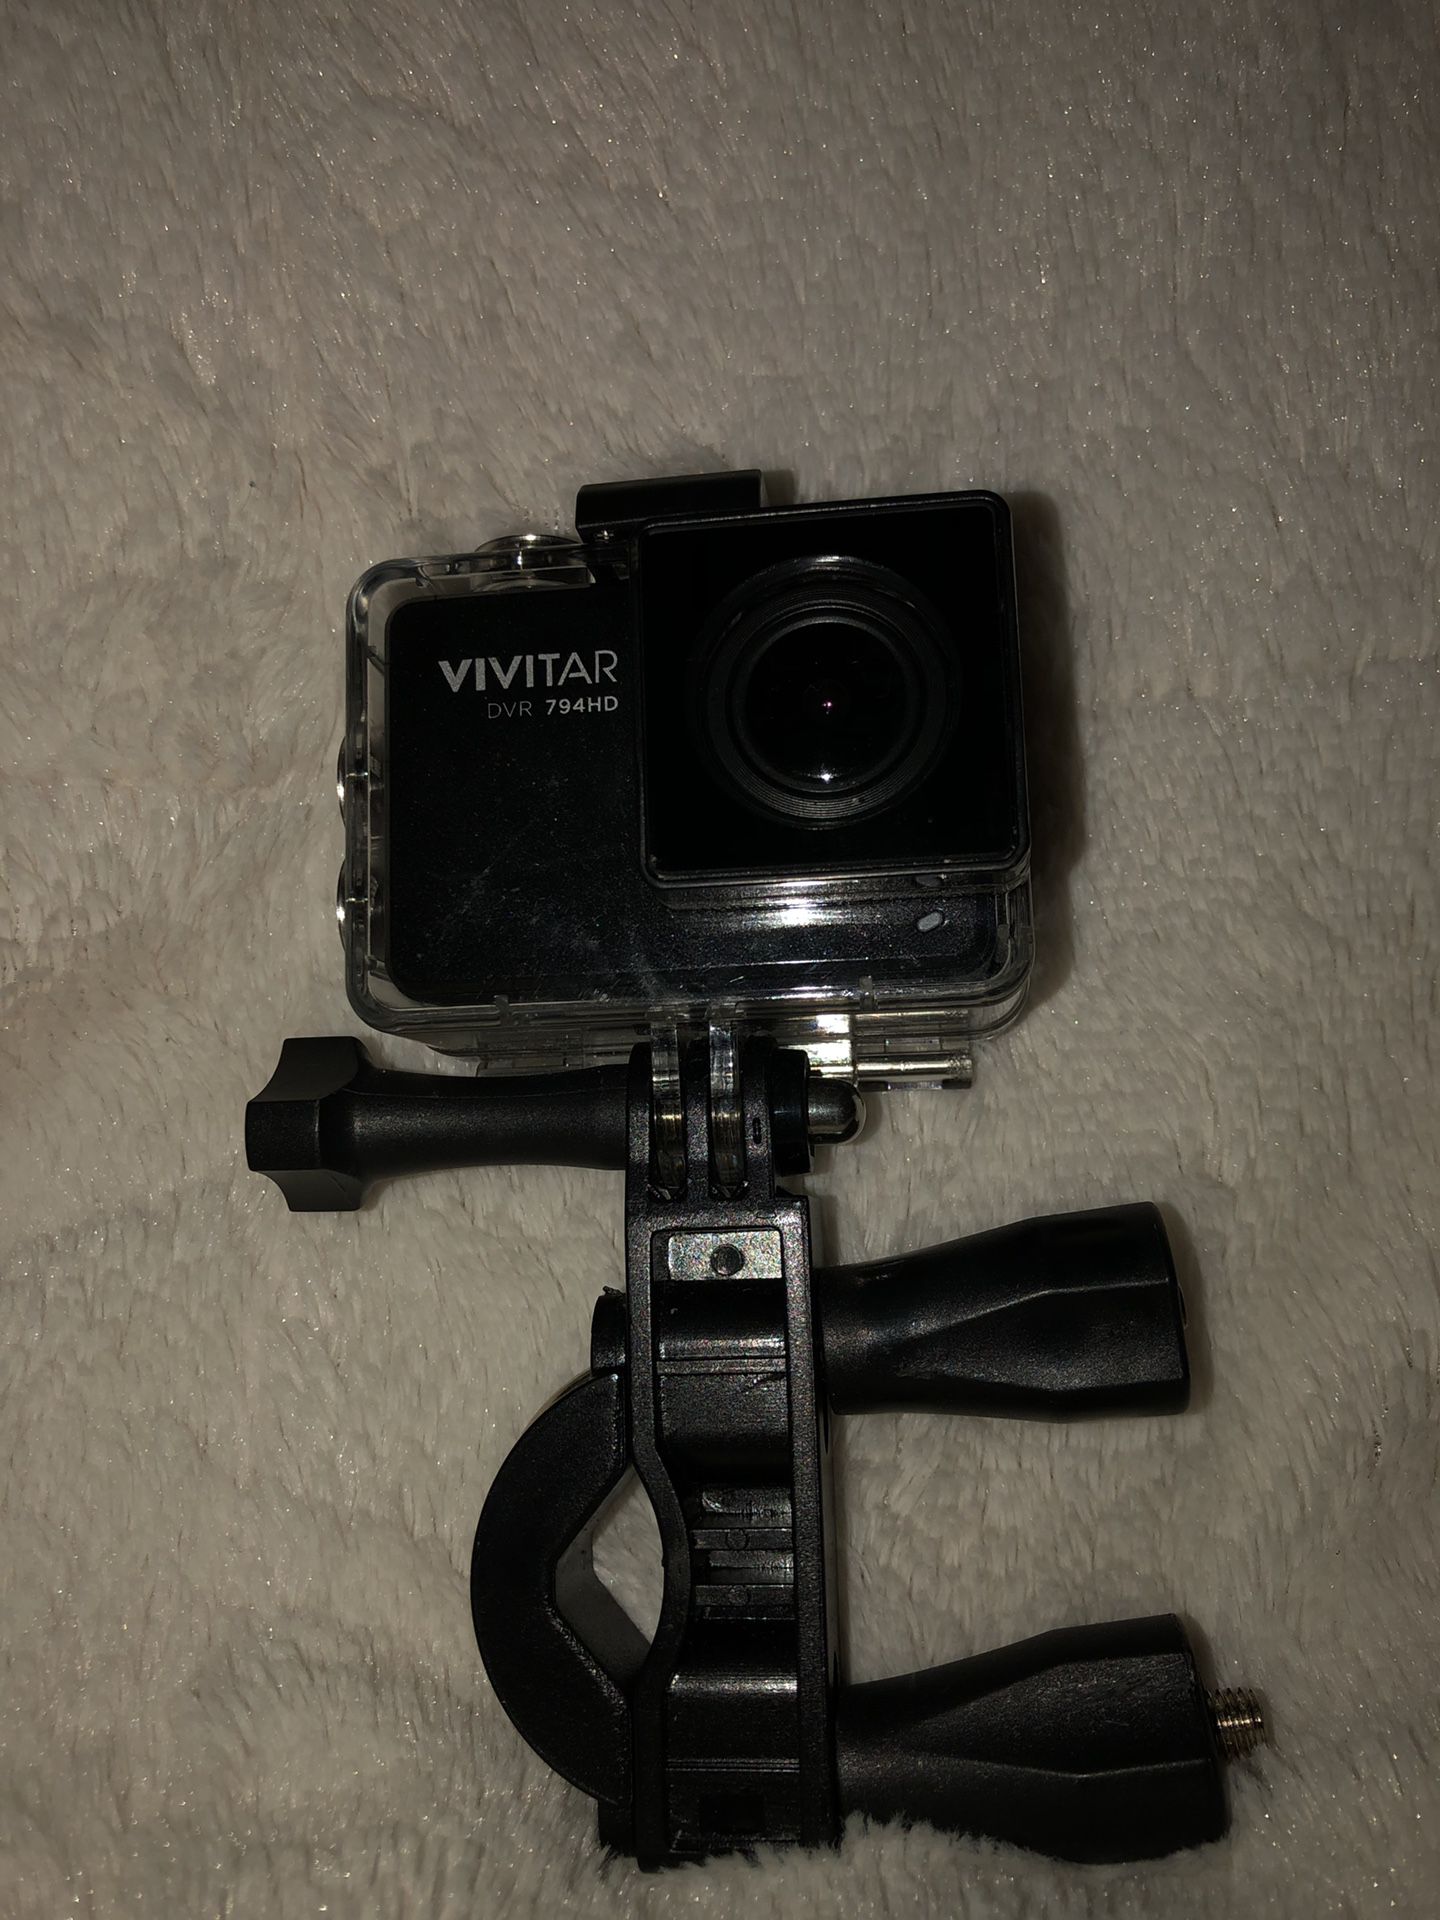 Vivitar camera (similar to GoPro type thing)